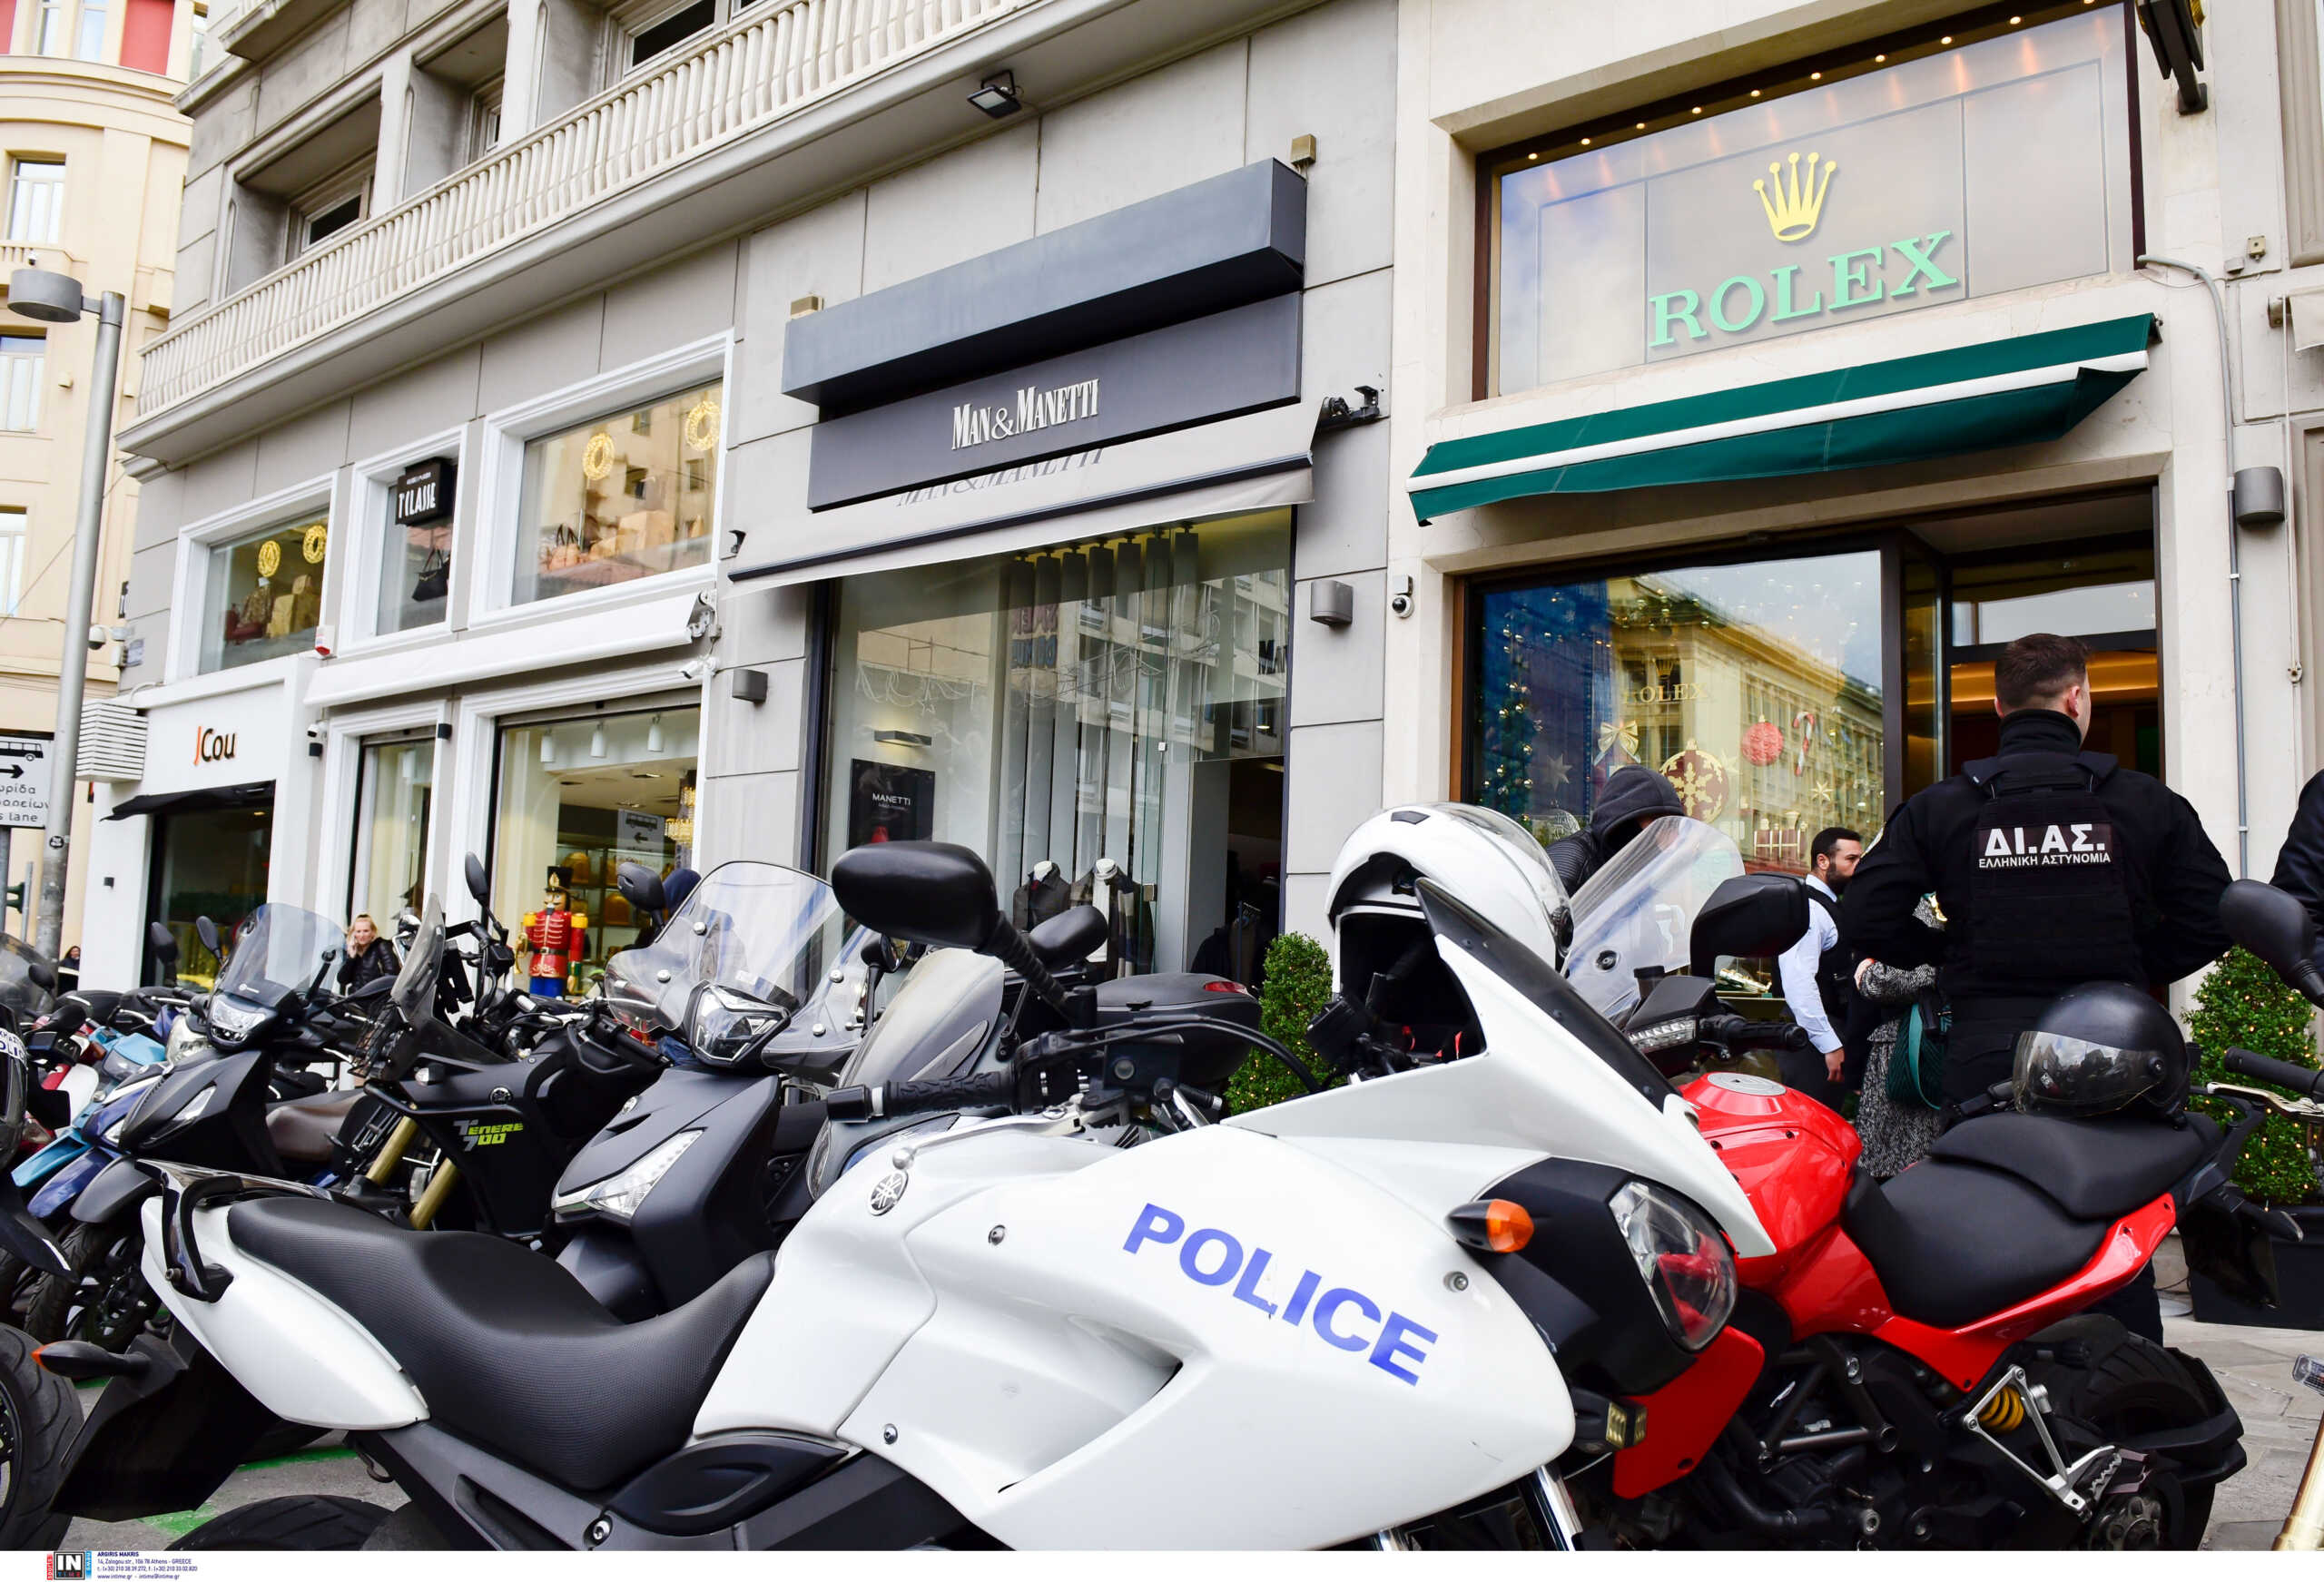 Ληστεία σε κατάστημα της Rolex: «Είδα το φύλακα χτυπημένο και με αίματα» λέει αυτόπτης μάρτυρας